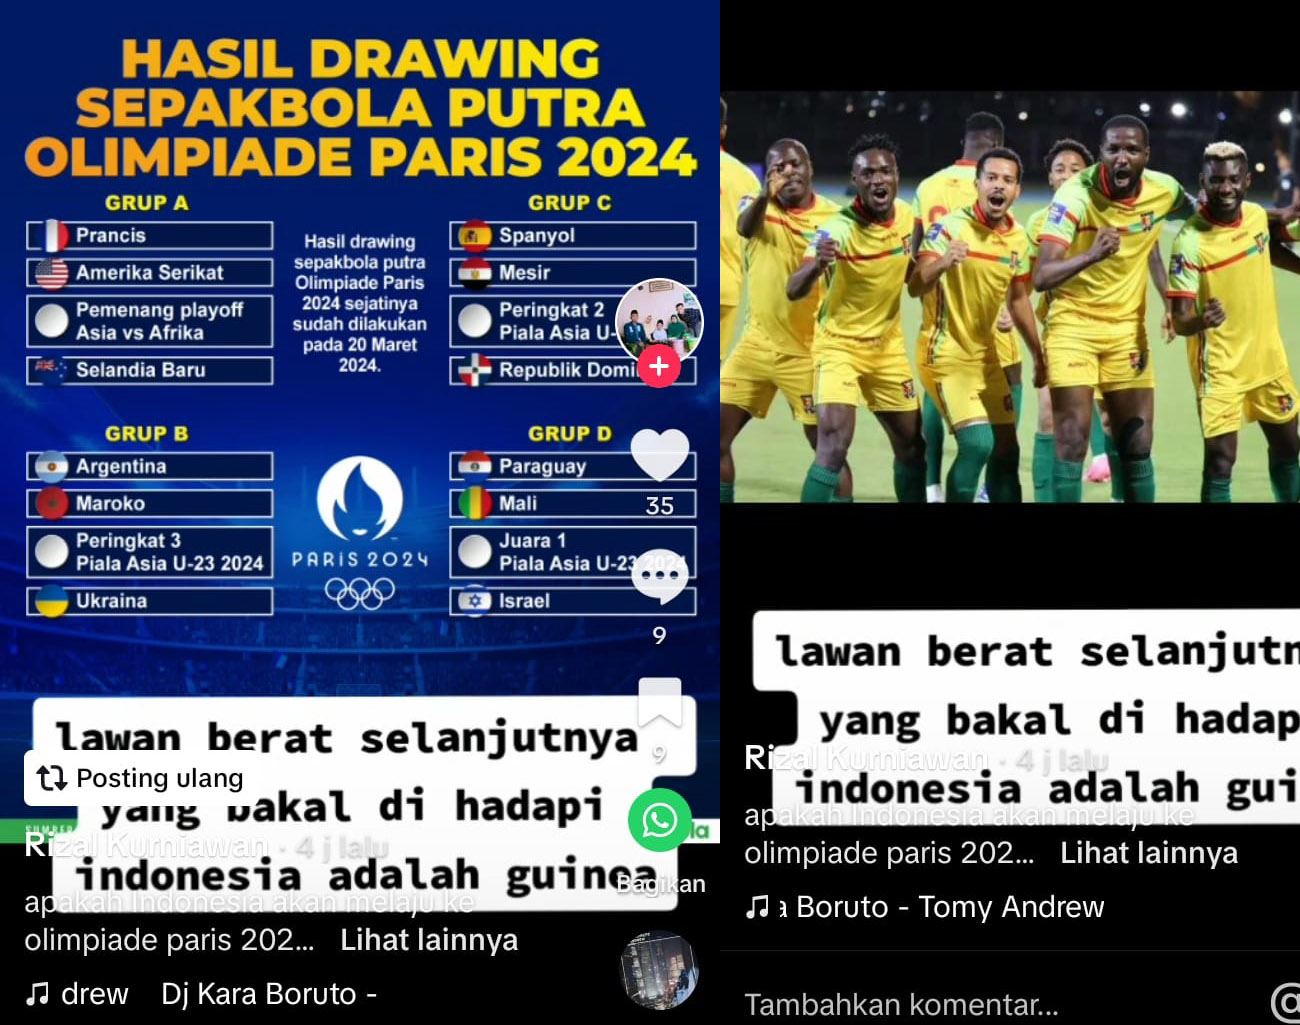 Guinea Lawan Selanjutnya Timnas Indonesia, Setelah Gagal Rebut Juara 3 Piala Asia U-23 2024